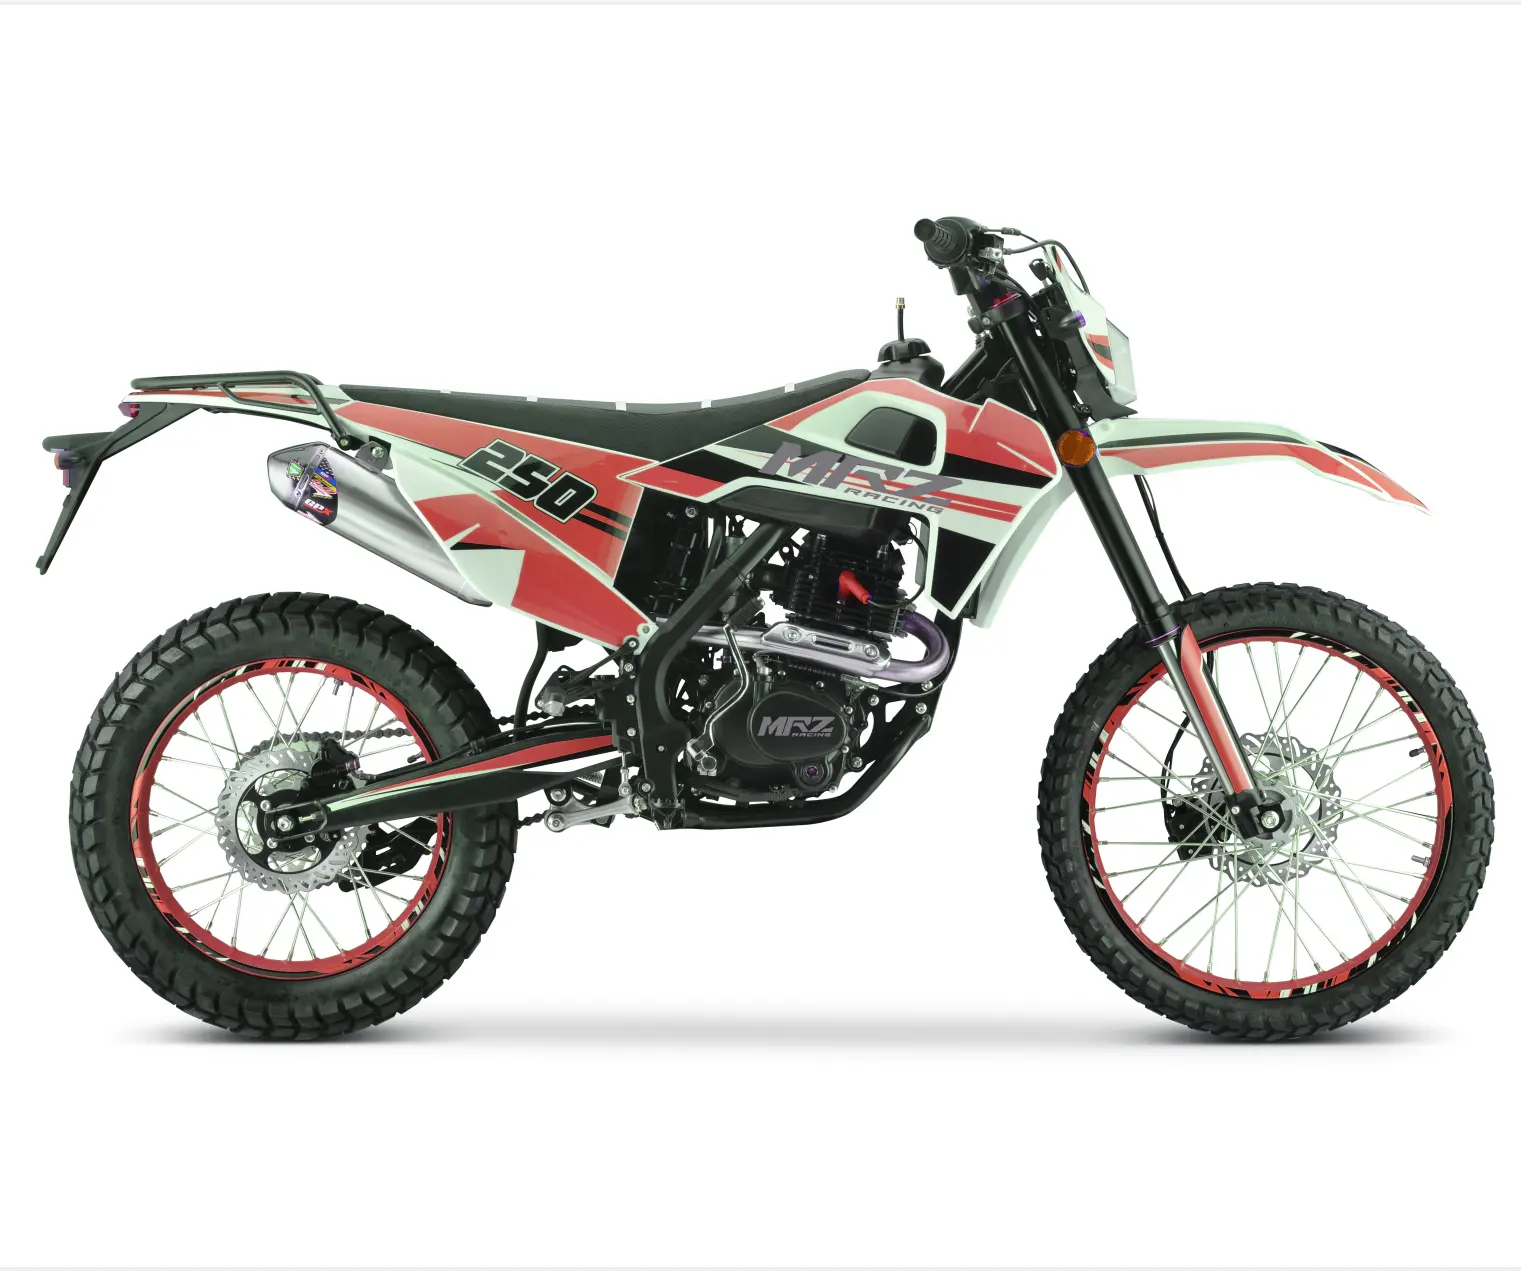 Da250 dirt bike 250cc com ce moto enduro fabrico de china, off road, outro, motocicleta, bicicleta dirt bike